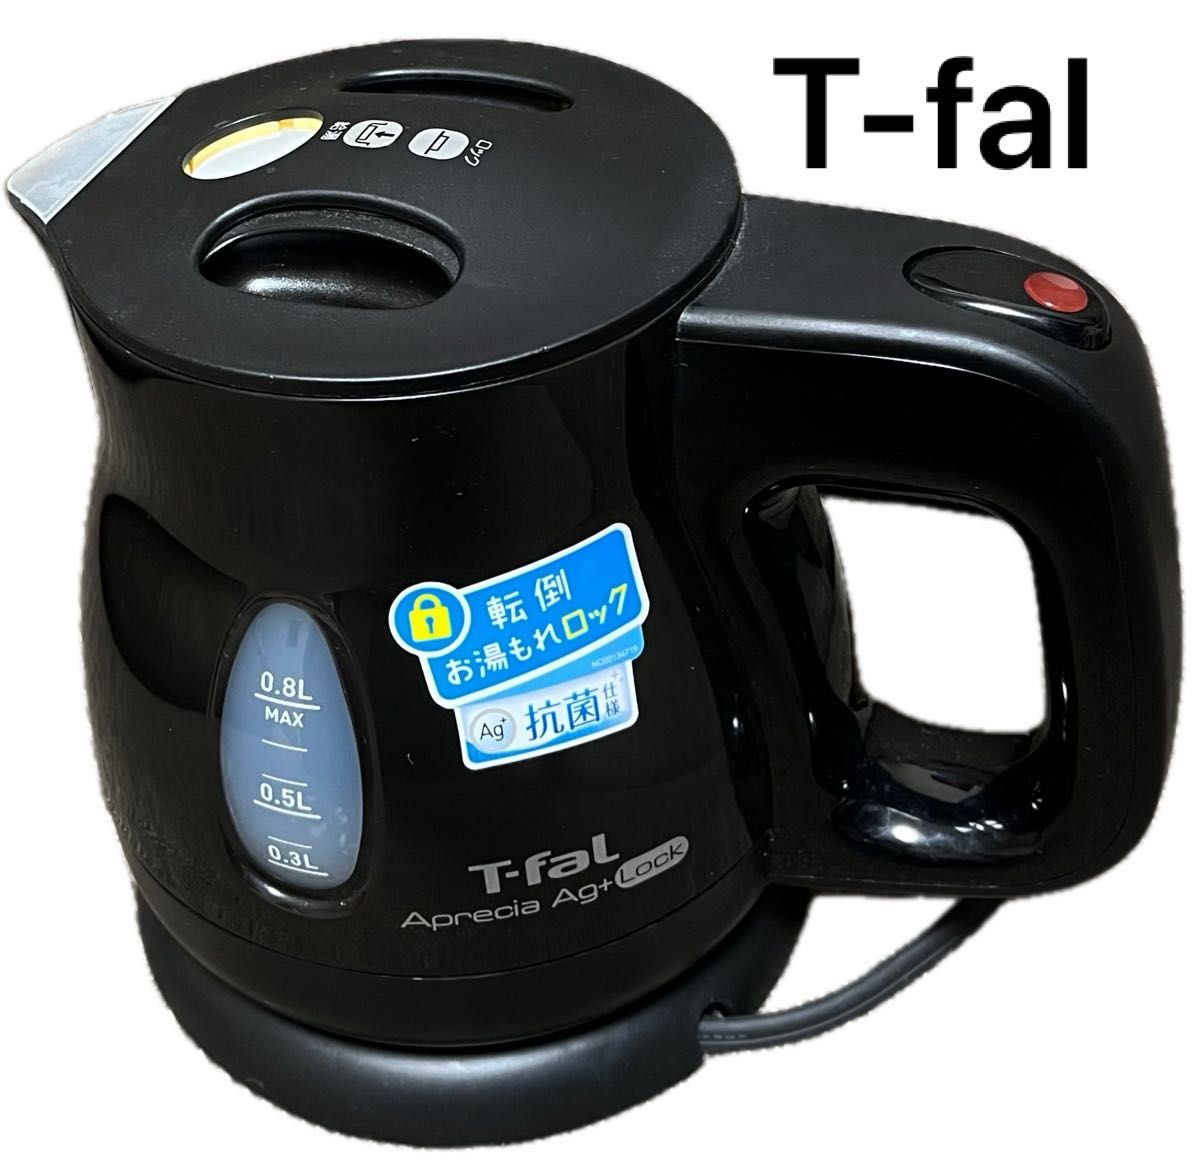 【T-faL】ティファール、電気ケトル、0.8リットル、AGプラス、ロック機能付